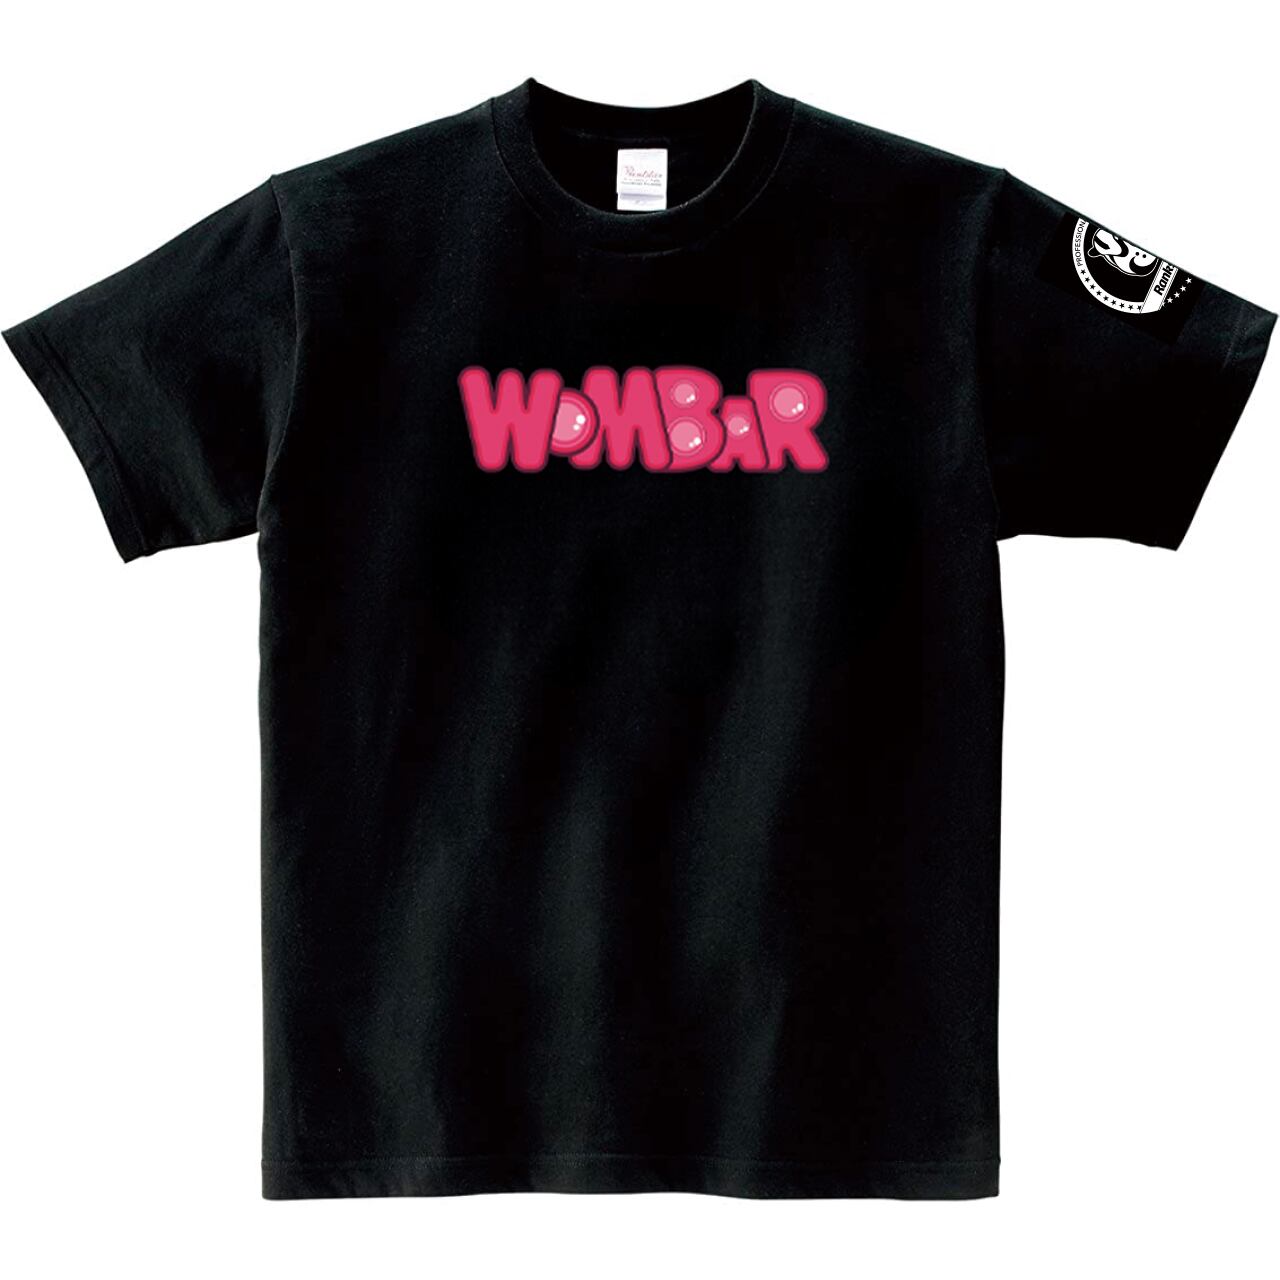 選手応援グッズ Wombar Tシャツ Rankseeker Shop